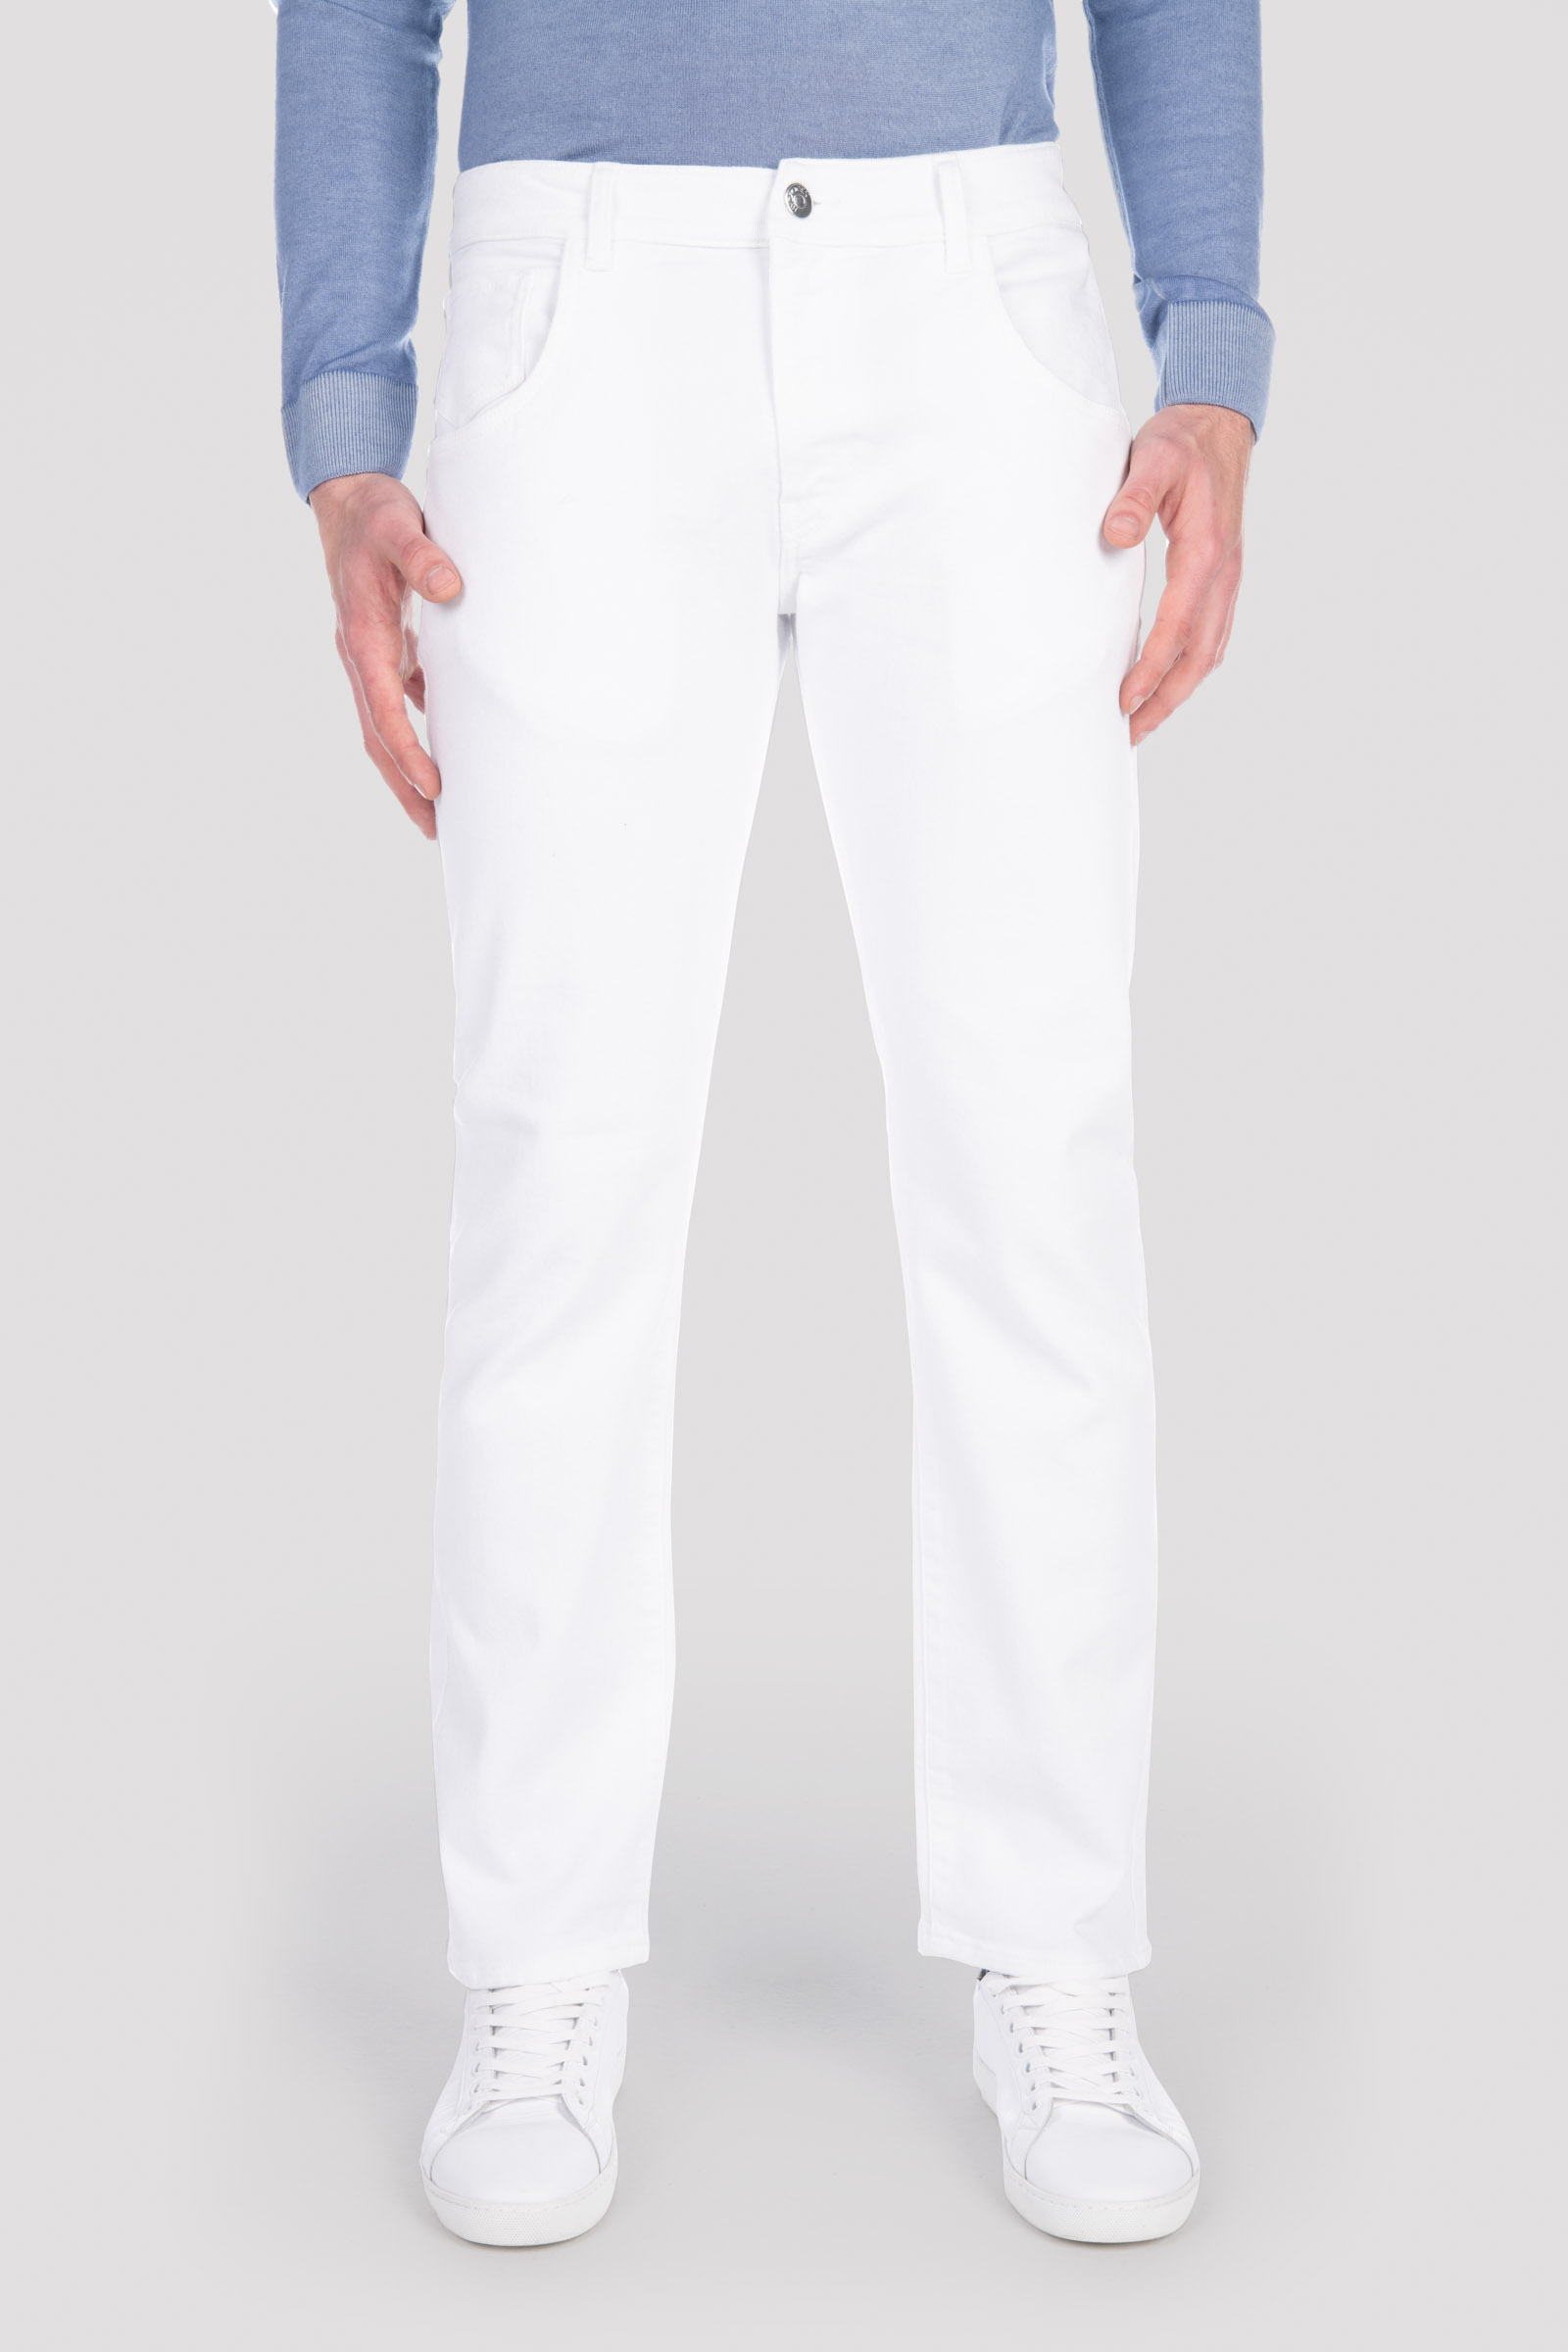 DENIM PANTS - Outlet Hydrogen - Luxury Sportwear